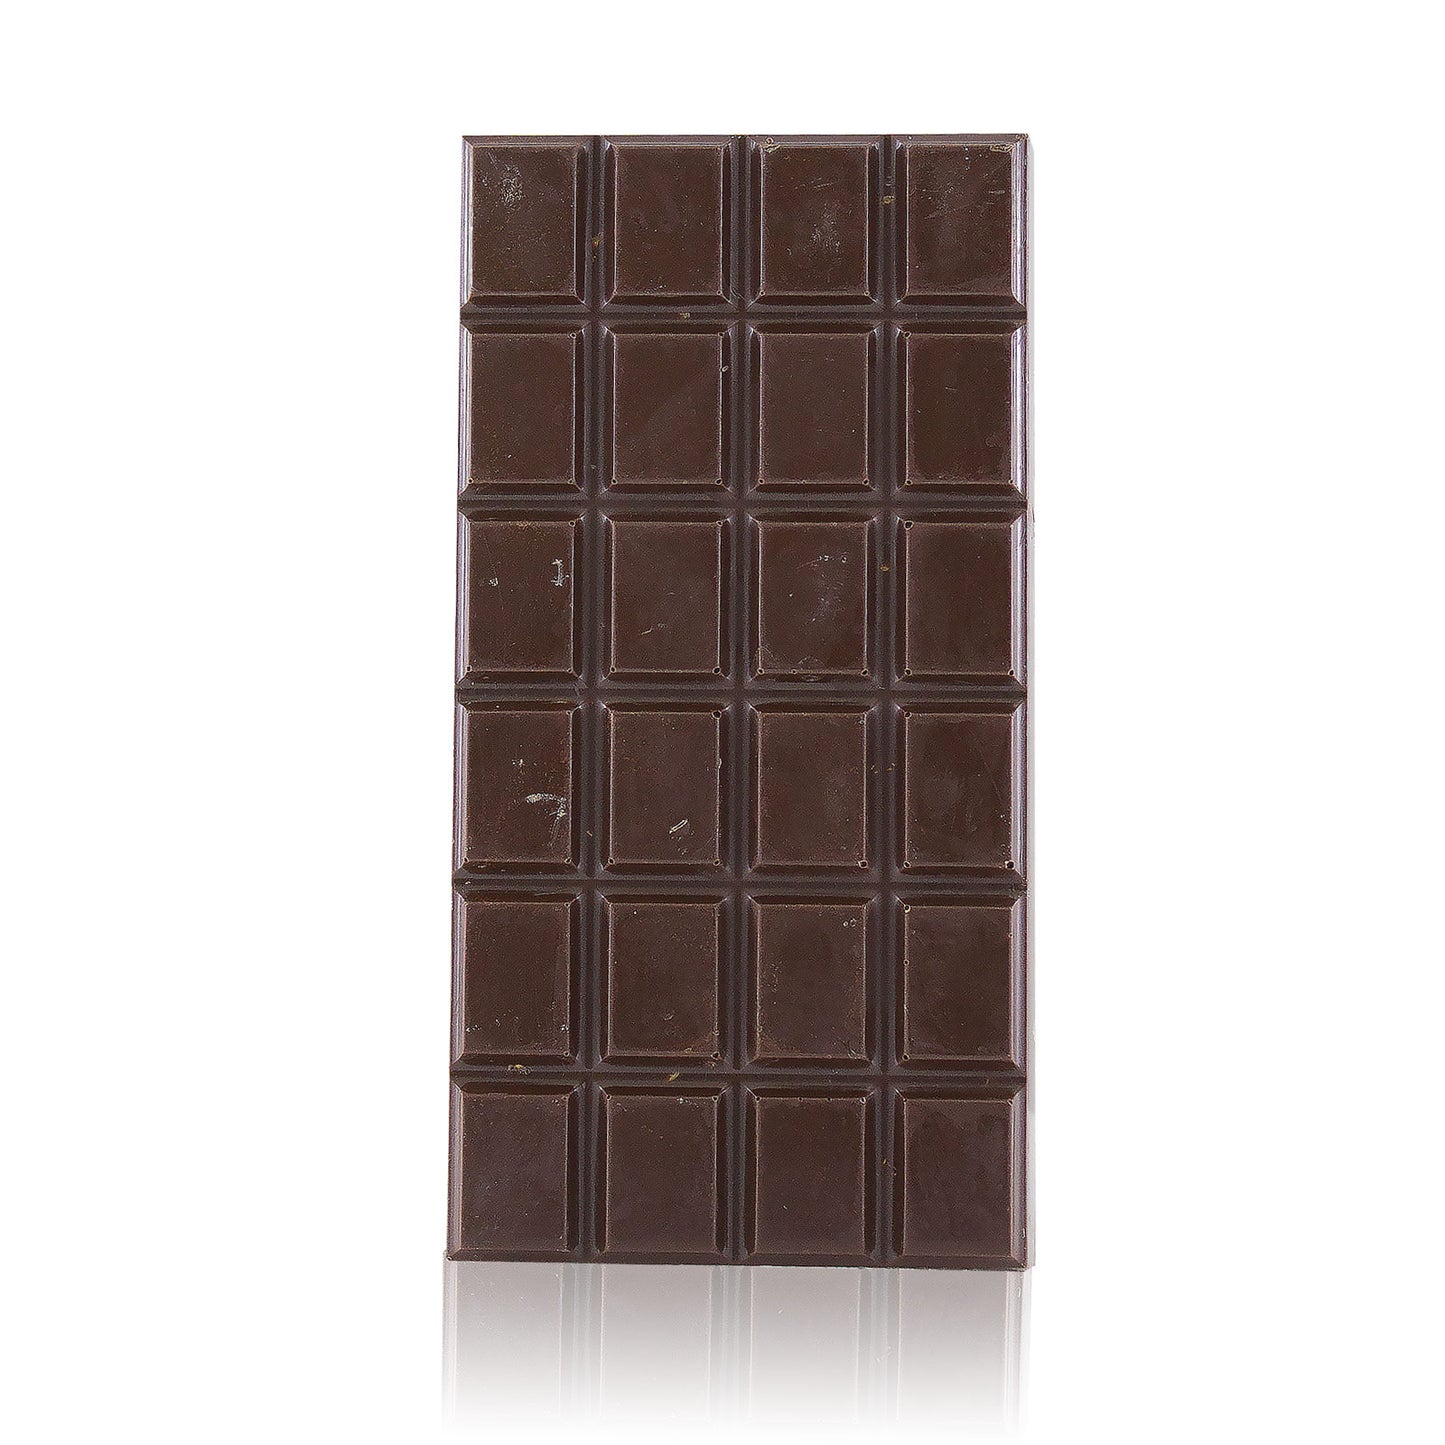 Tavoletta di cioccolato extra fondente alla liquirizia - 70%